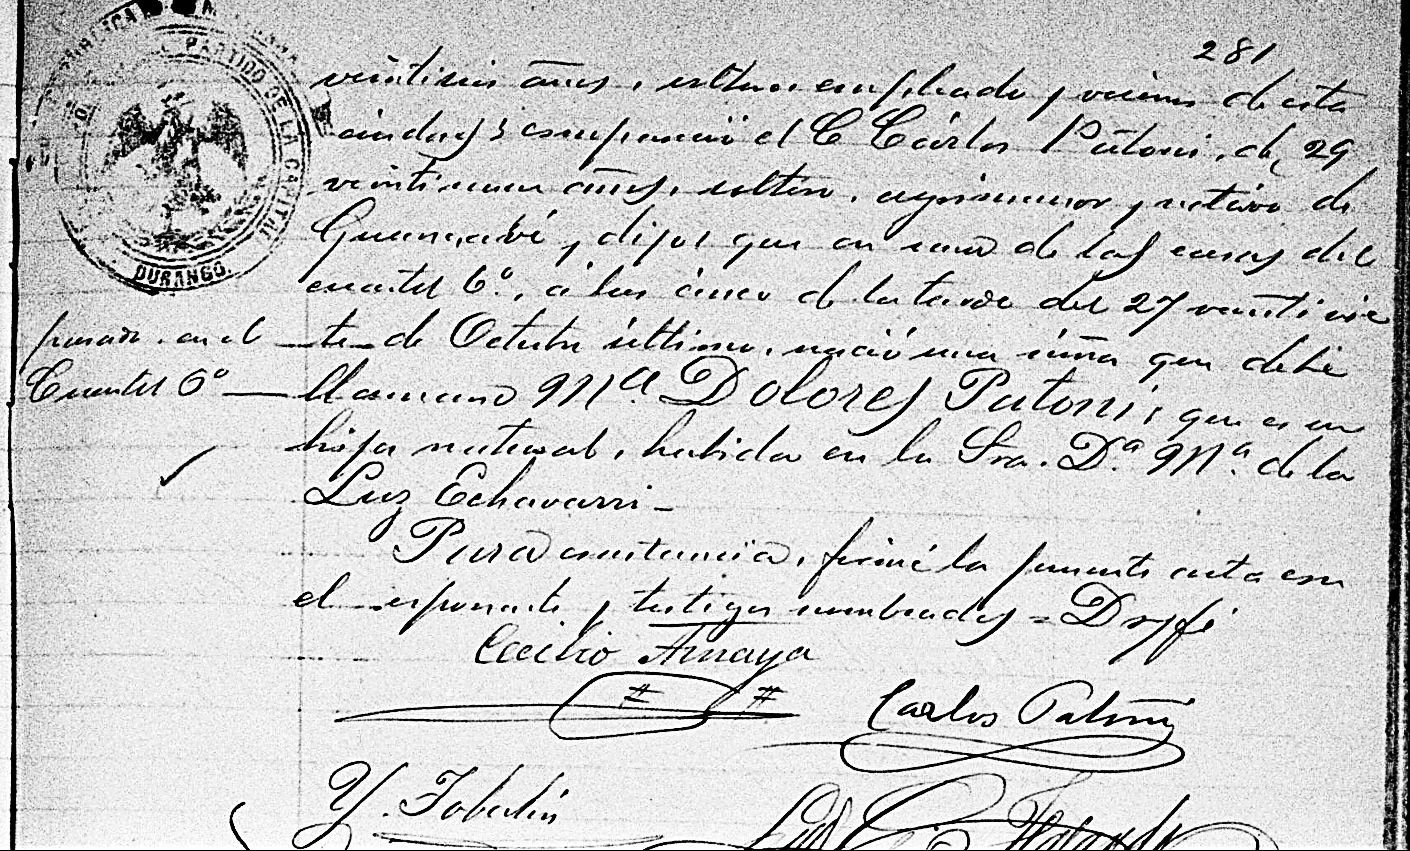 Civil Birth Record of Maria Dolores Patoni in 1882